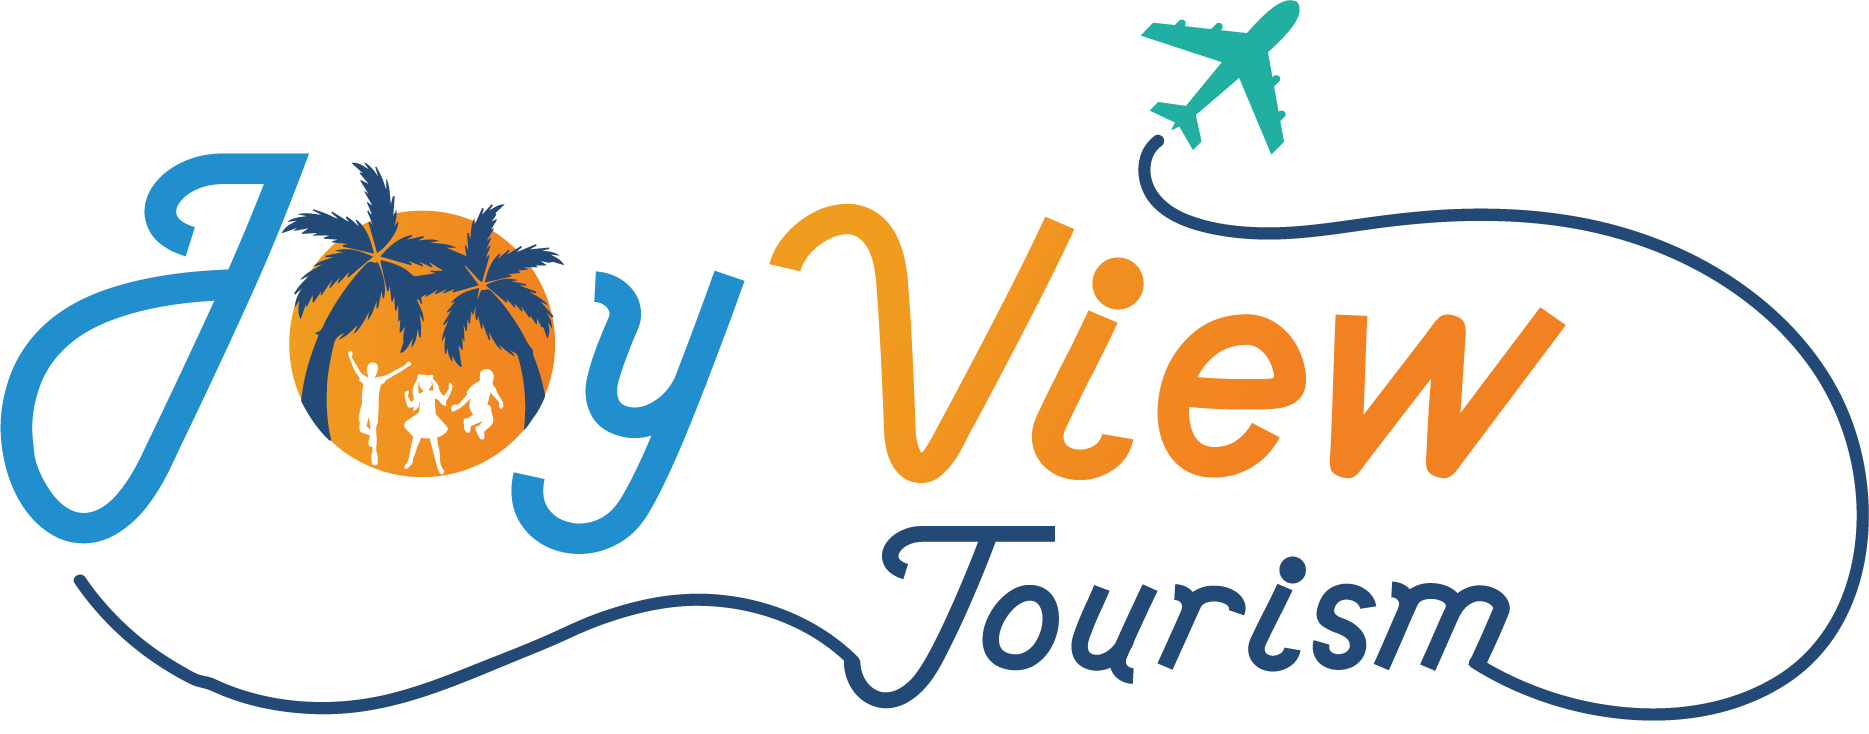 Joy View Tourism LLC